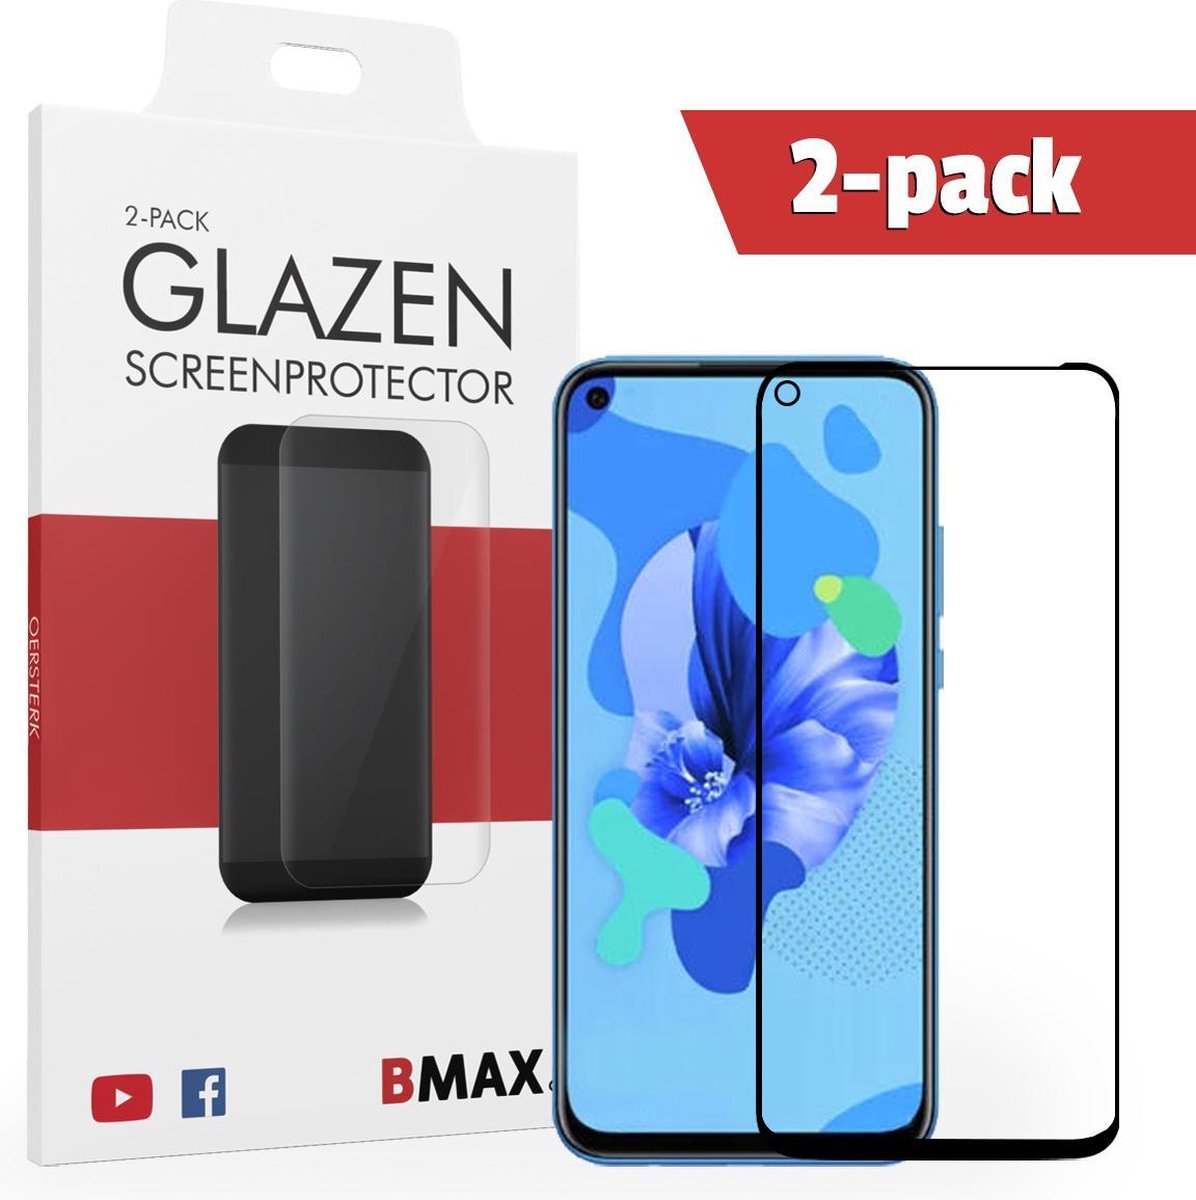 2-pack Bmax Huawei Mate 30 Lite Screenprotector - Glass - Full Cover 2.5d - Black